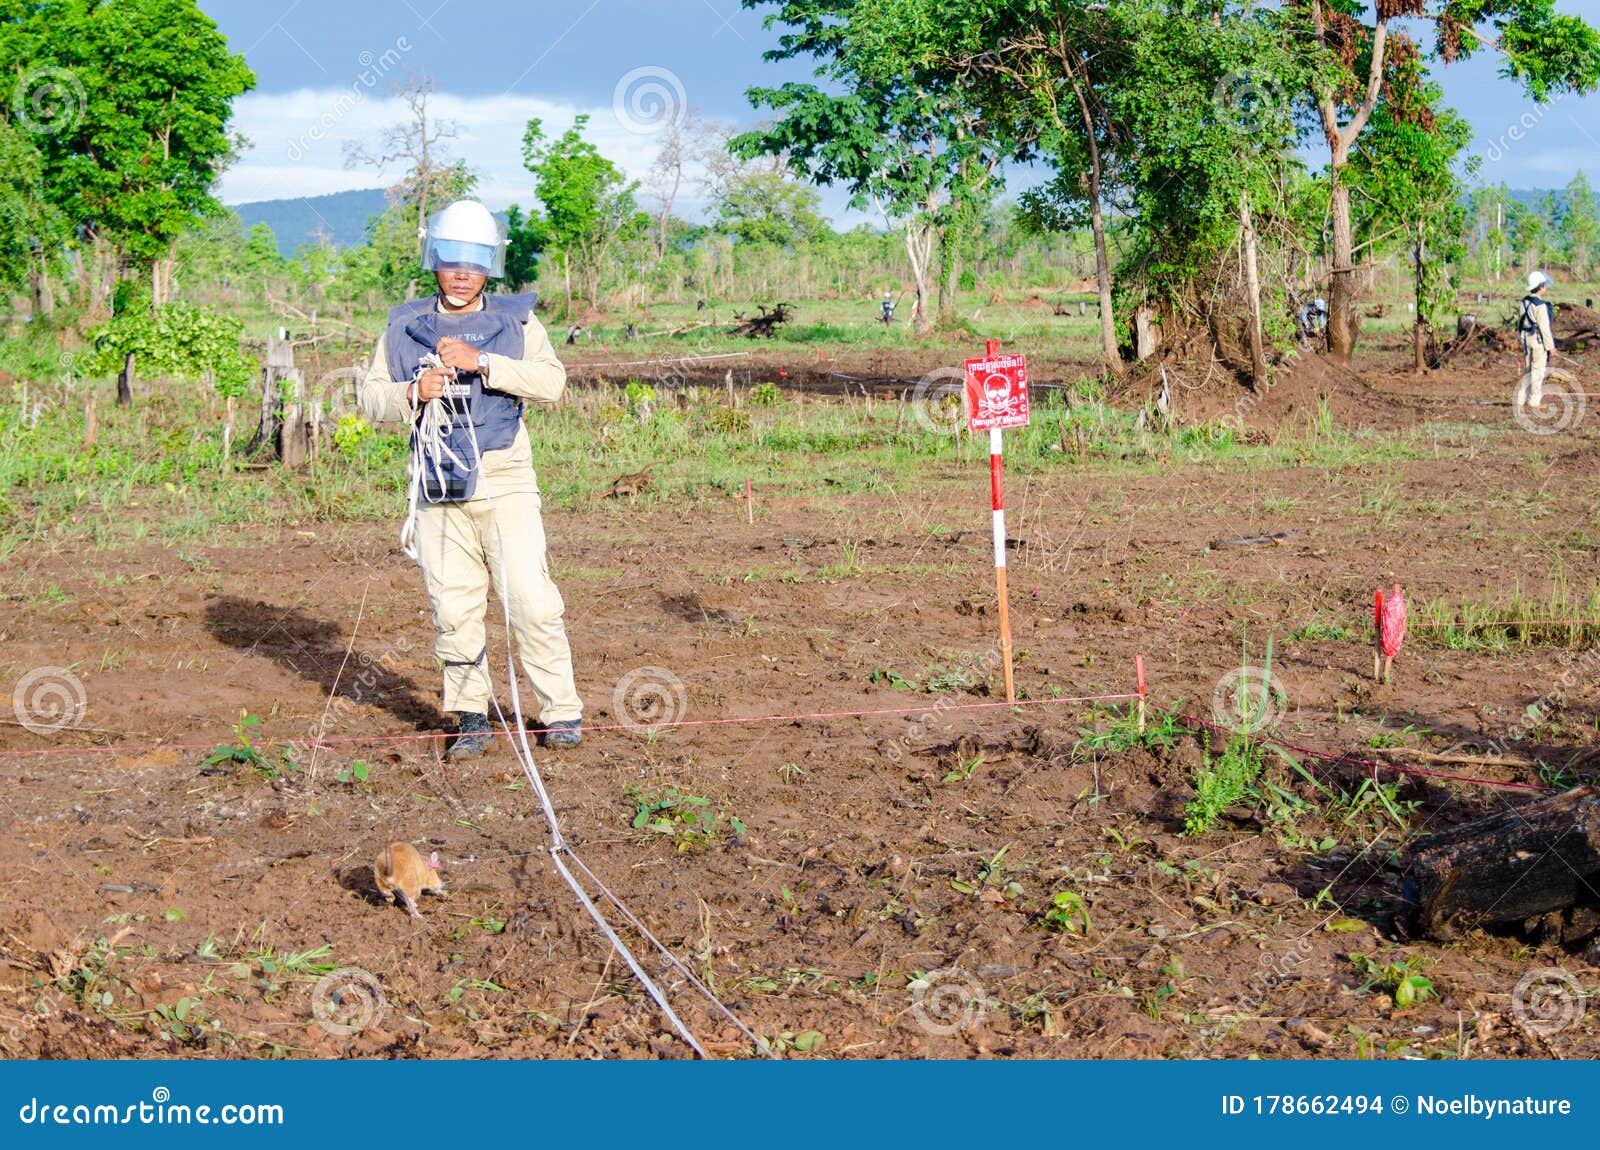 Pets4Company  Rato gigante africano condecorado por detetar minas  terrestres no Camboja.